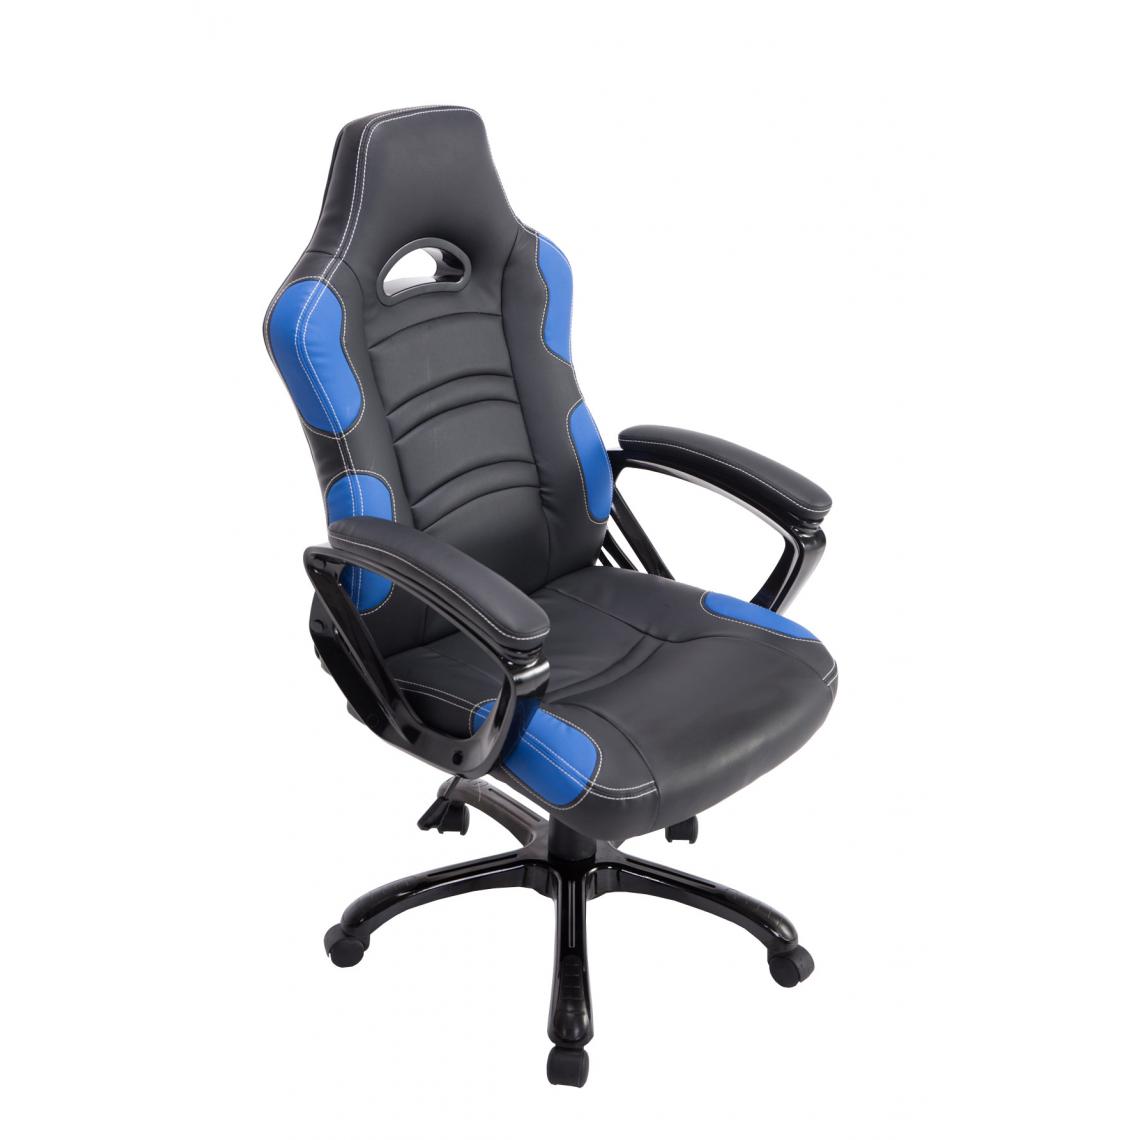 Icaverne - Moderne Chaise de bureau categorie Mexico couleur noir / bleu - Chaises